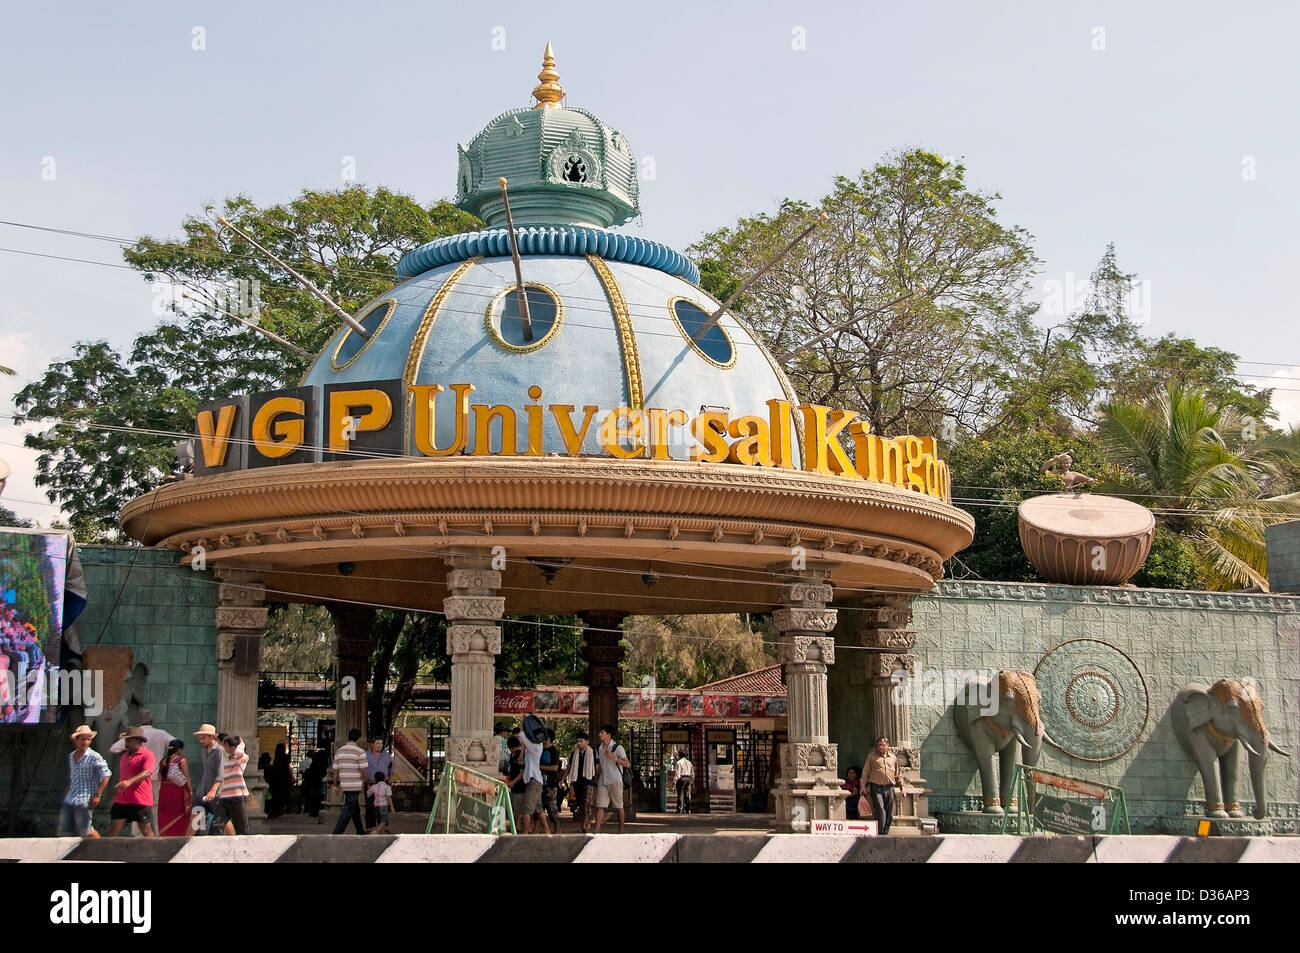 VGP Universal Königreich der beste Freizeitpark, Vergnügungspark, Water Park in Chennai (Madras) Indien Tamil Nadu Stockfoto